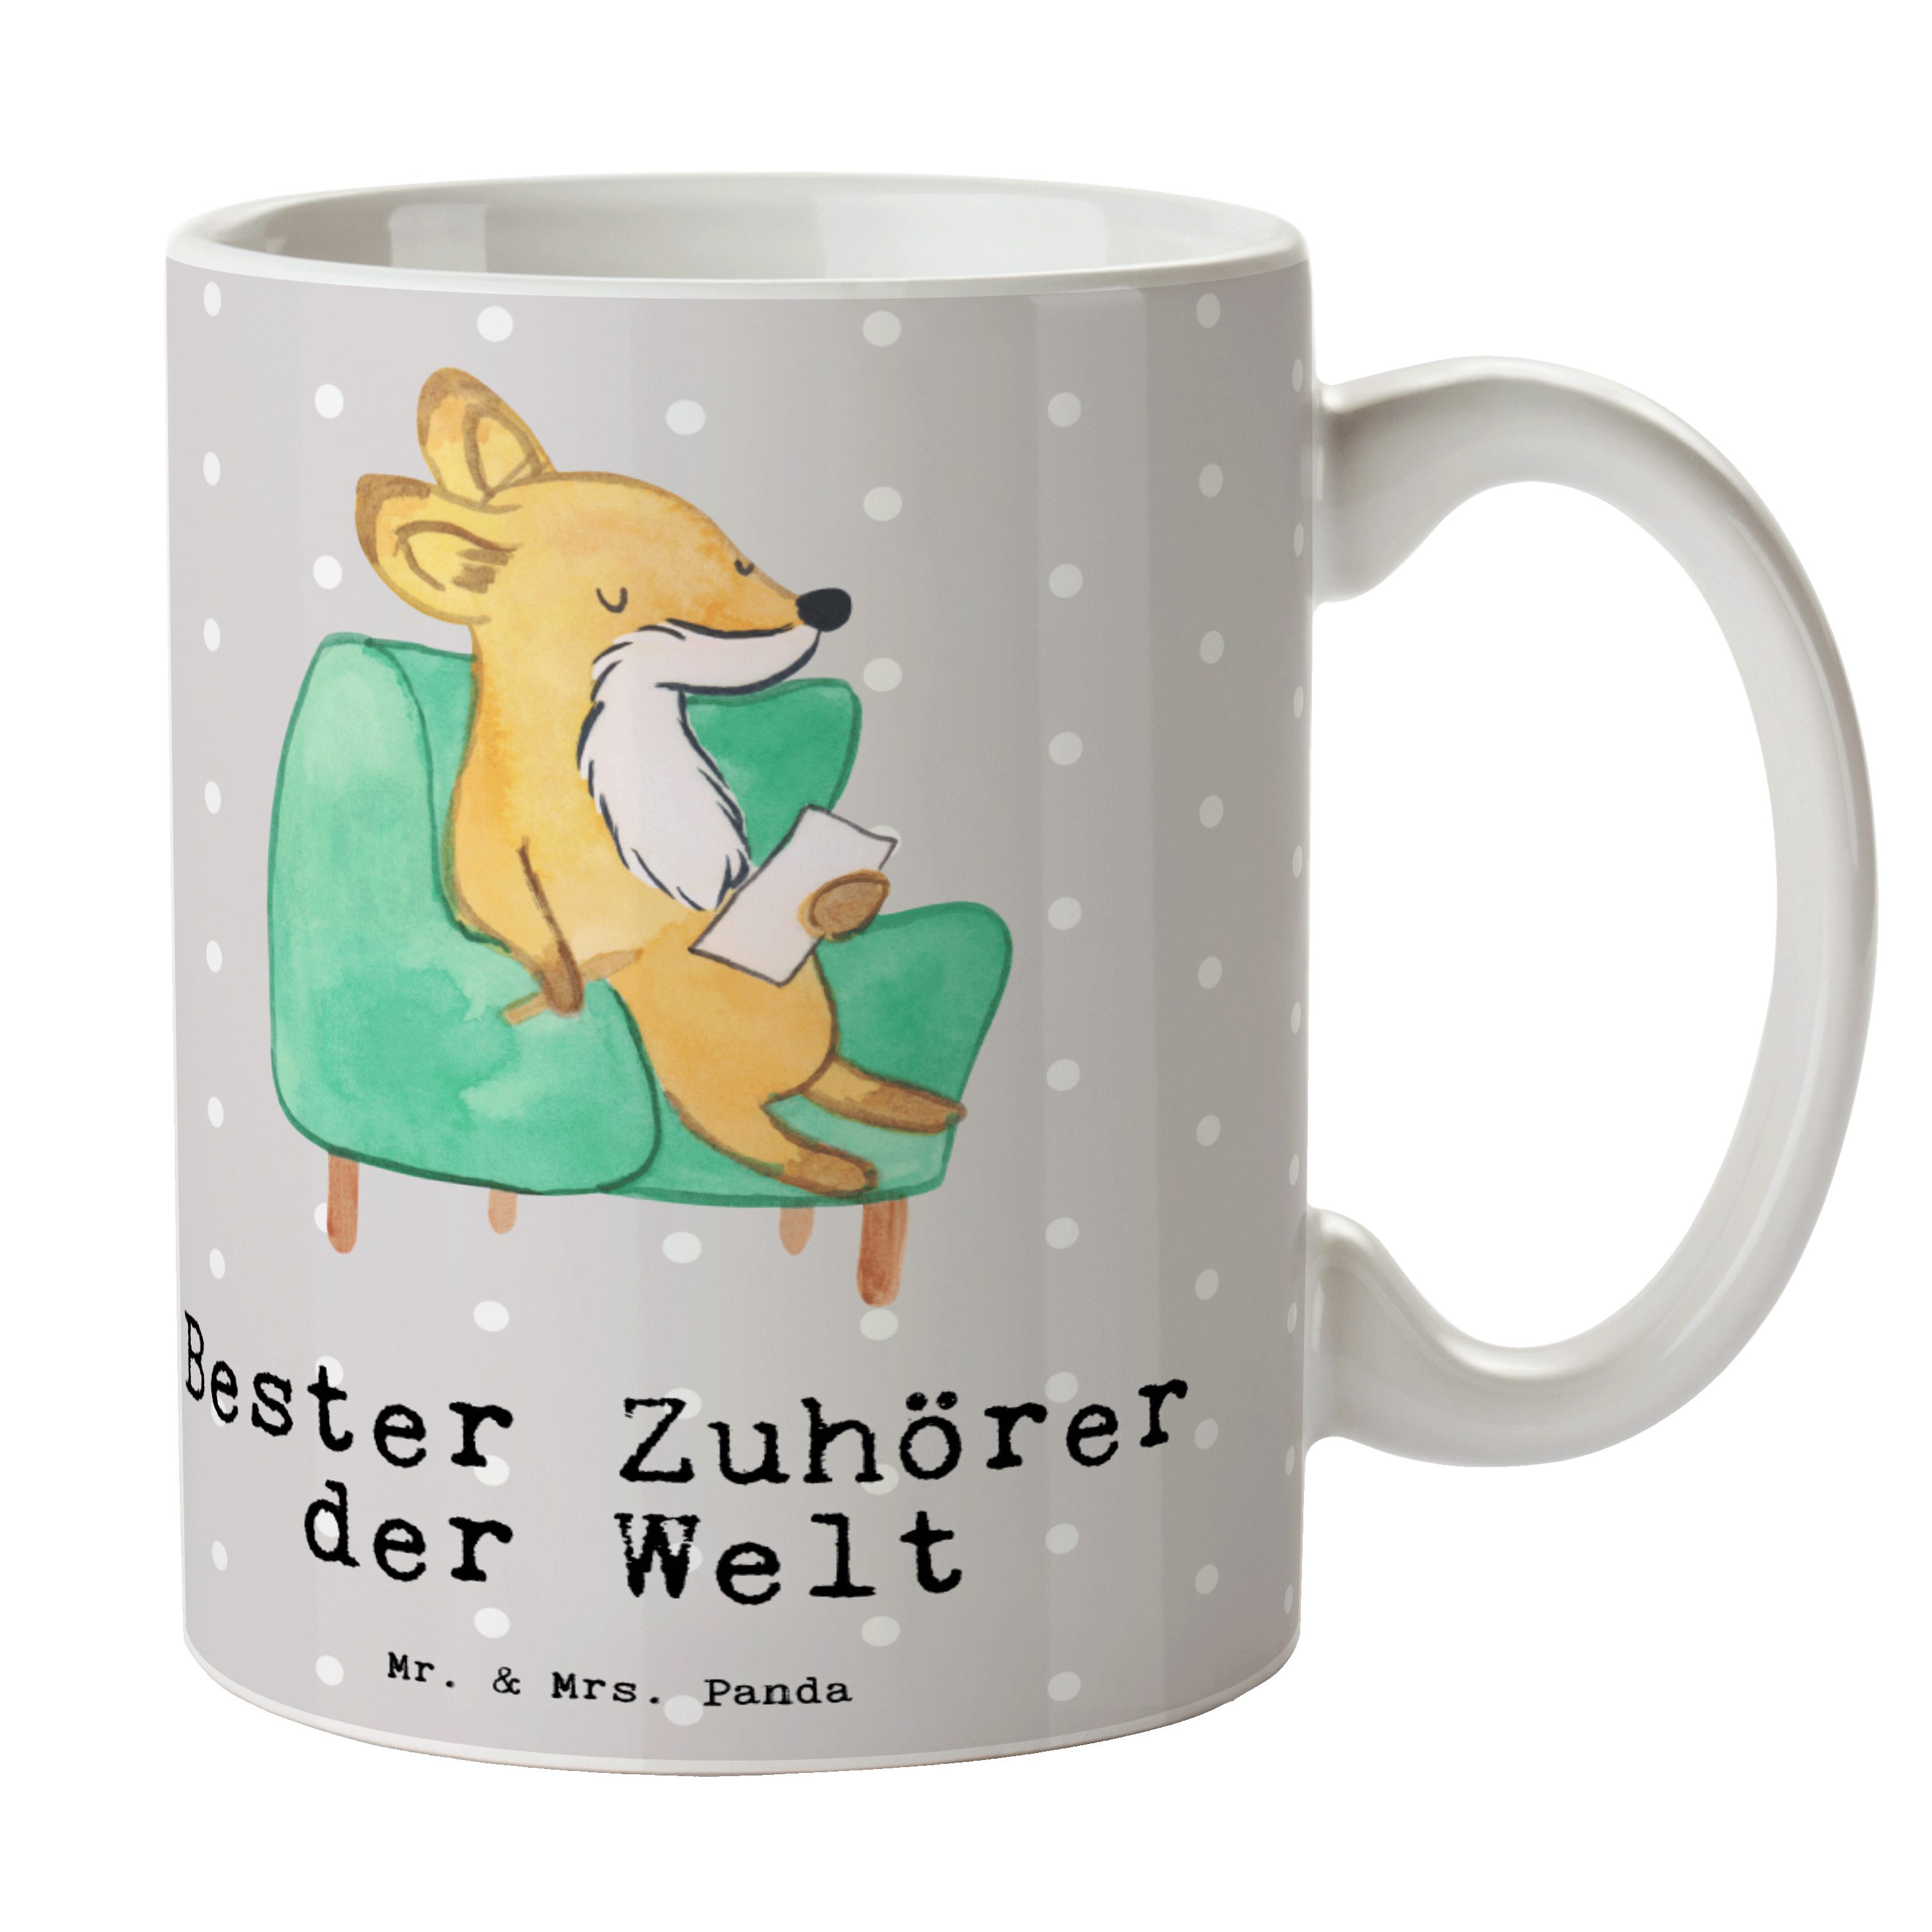 Mr. & Mrs. Panda Tasse Fuchs Bester Zuhörer der Welt - Grau Pastell - Geschenk, Kaffeetasse, Keramik